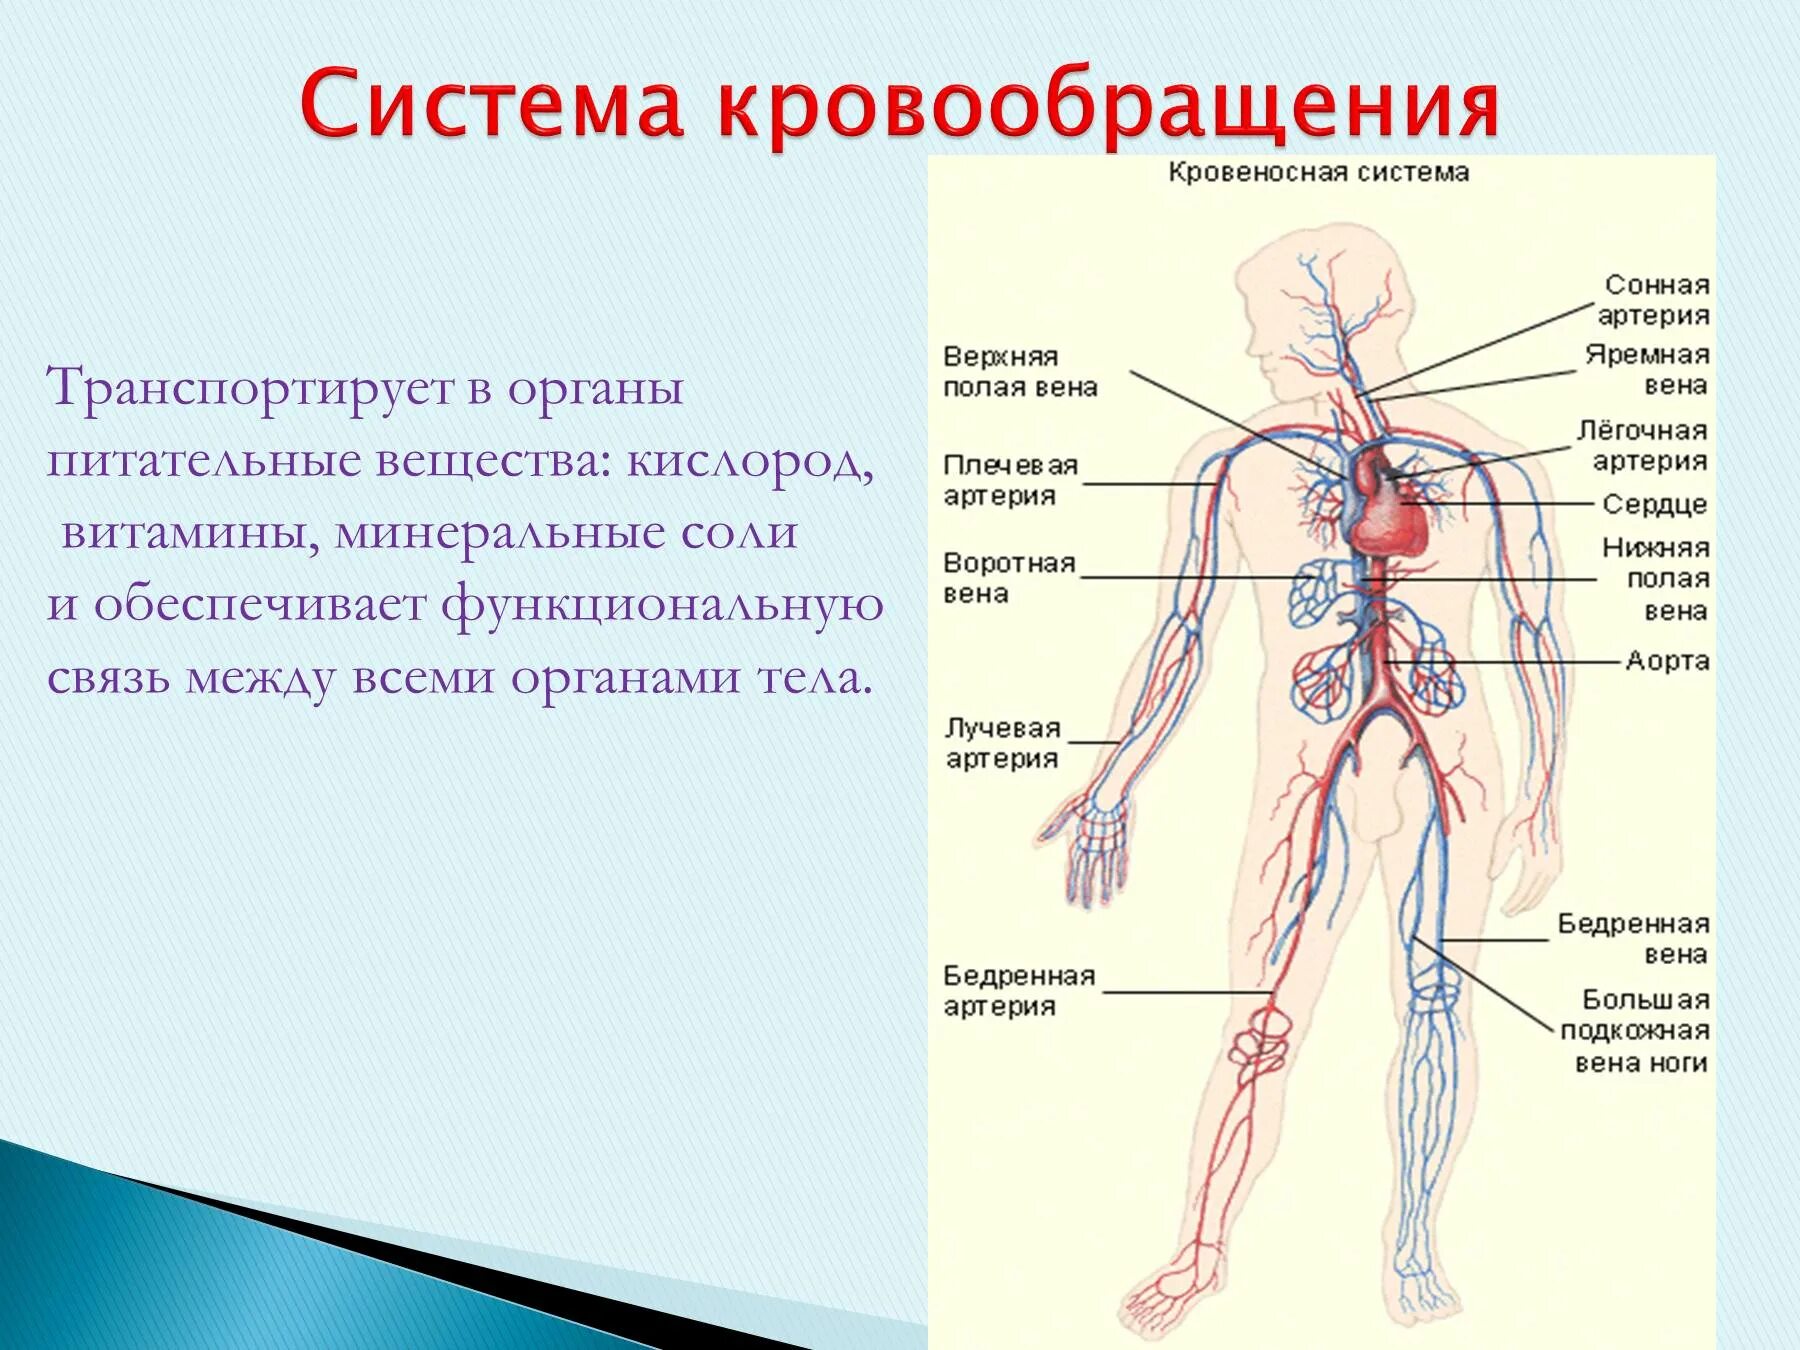 Основные органы кровообращения. Схема кровяной системы человека. Система кровообращения венозная система. Кровеносная система человека анатомия функции. Кровеносные сосуды человека схема артерии вены.